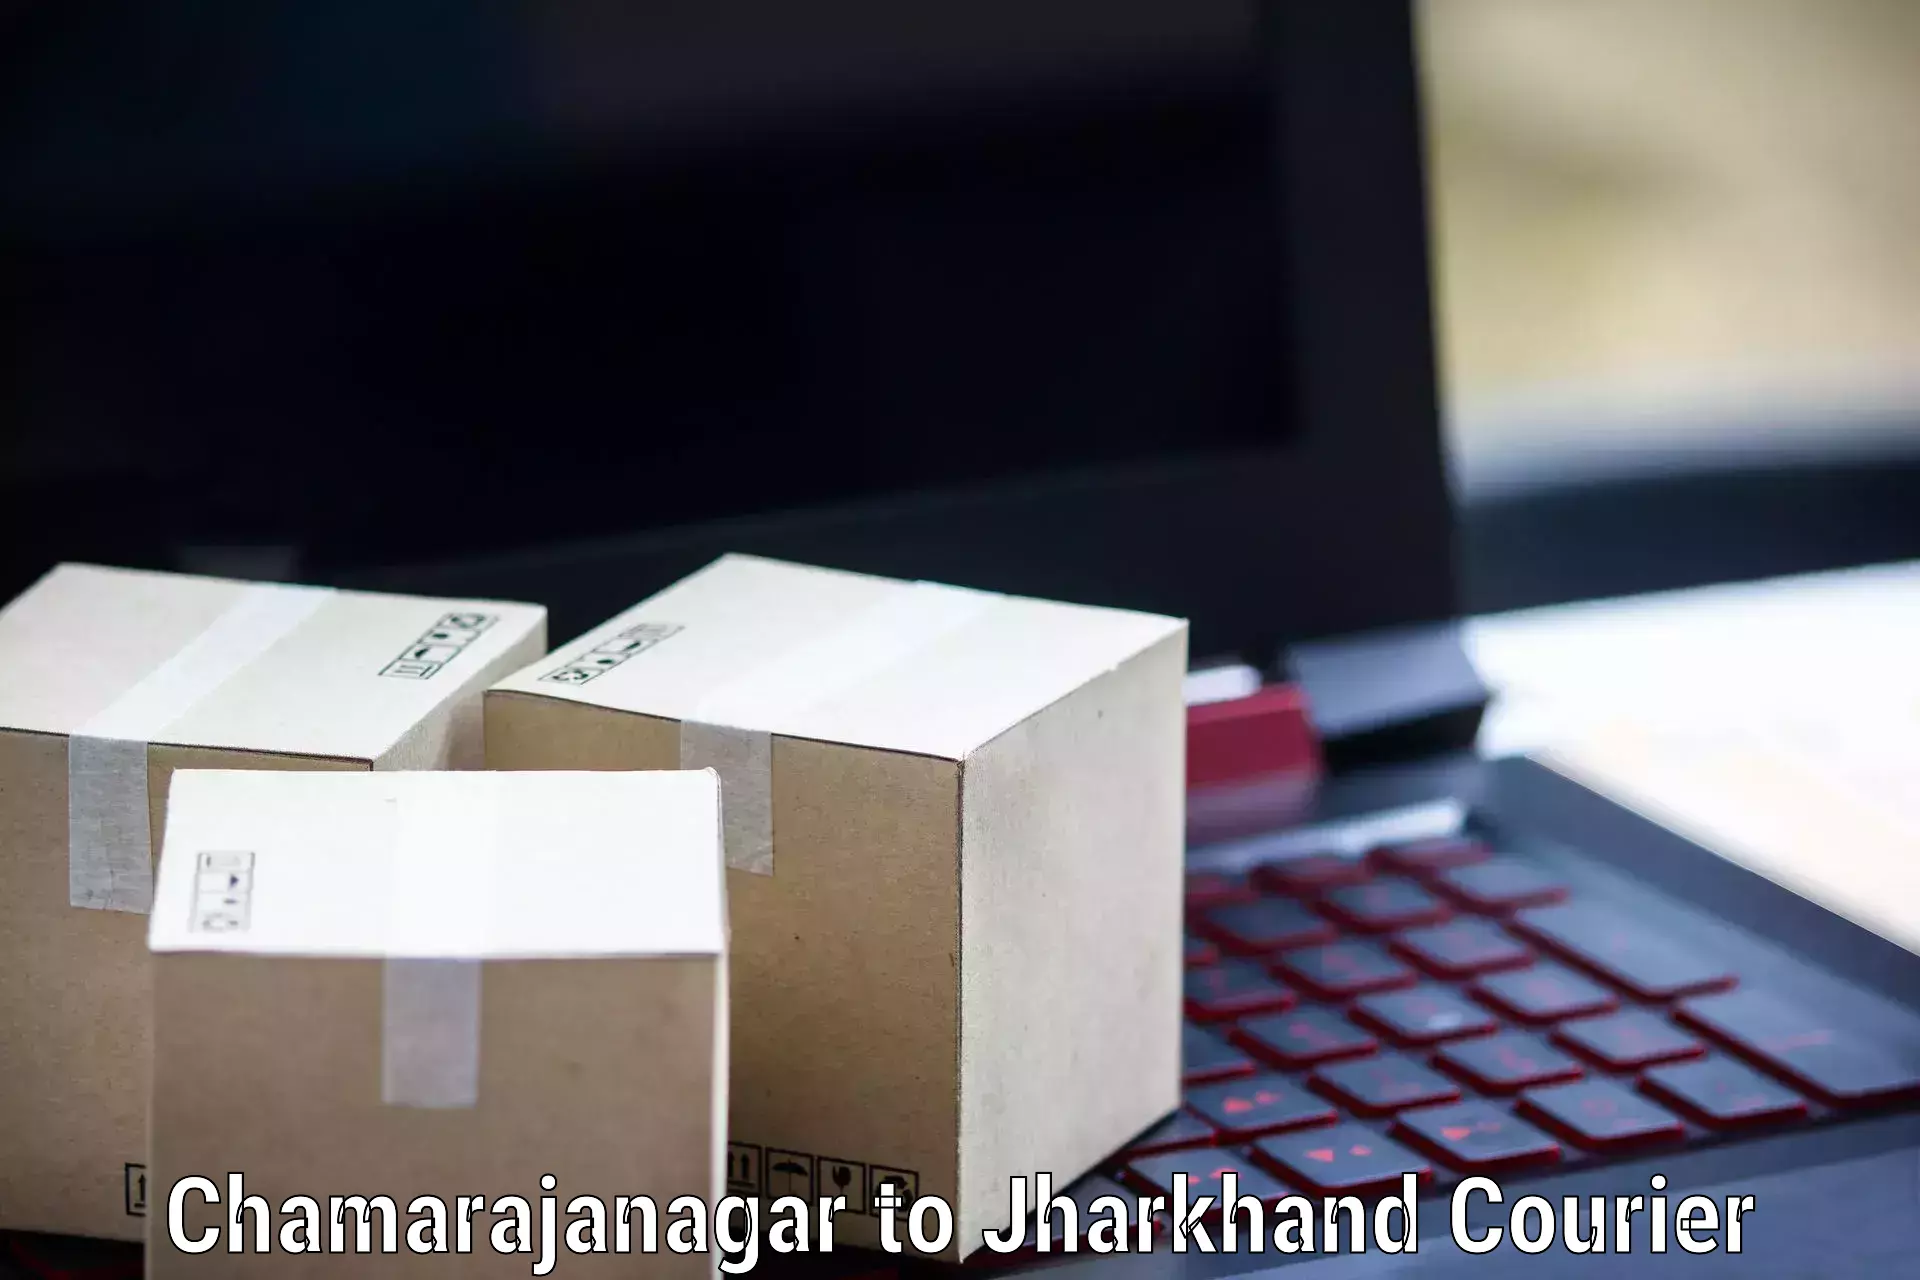 Digital courier platforms Chamarajanagar to Hazaribagh